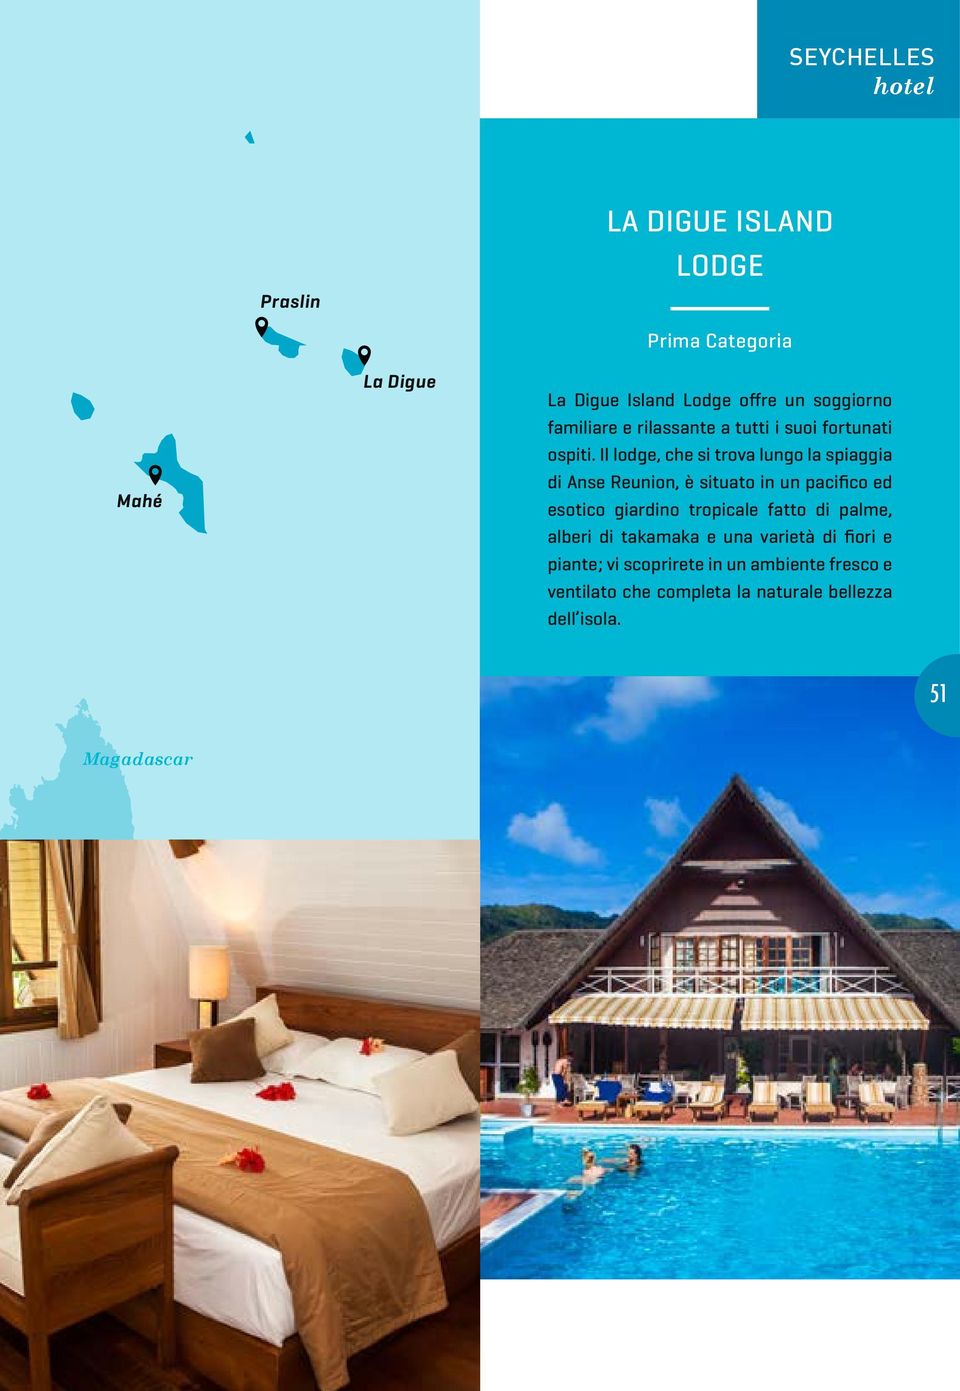 Il lodge, che si trova lungo la spiaggia di Anse Reunion, è situato in un pacifico ed esotico giardino tropicale